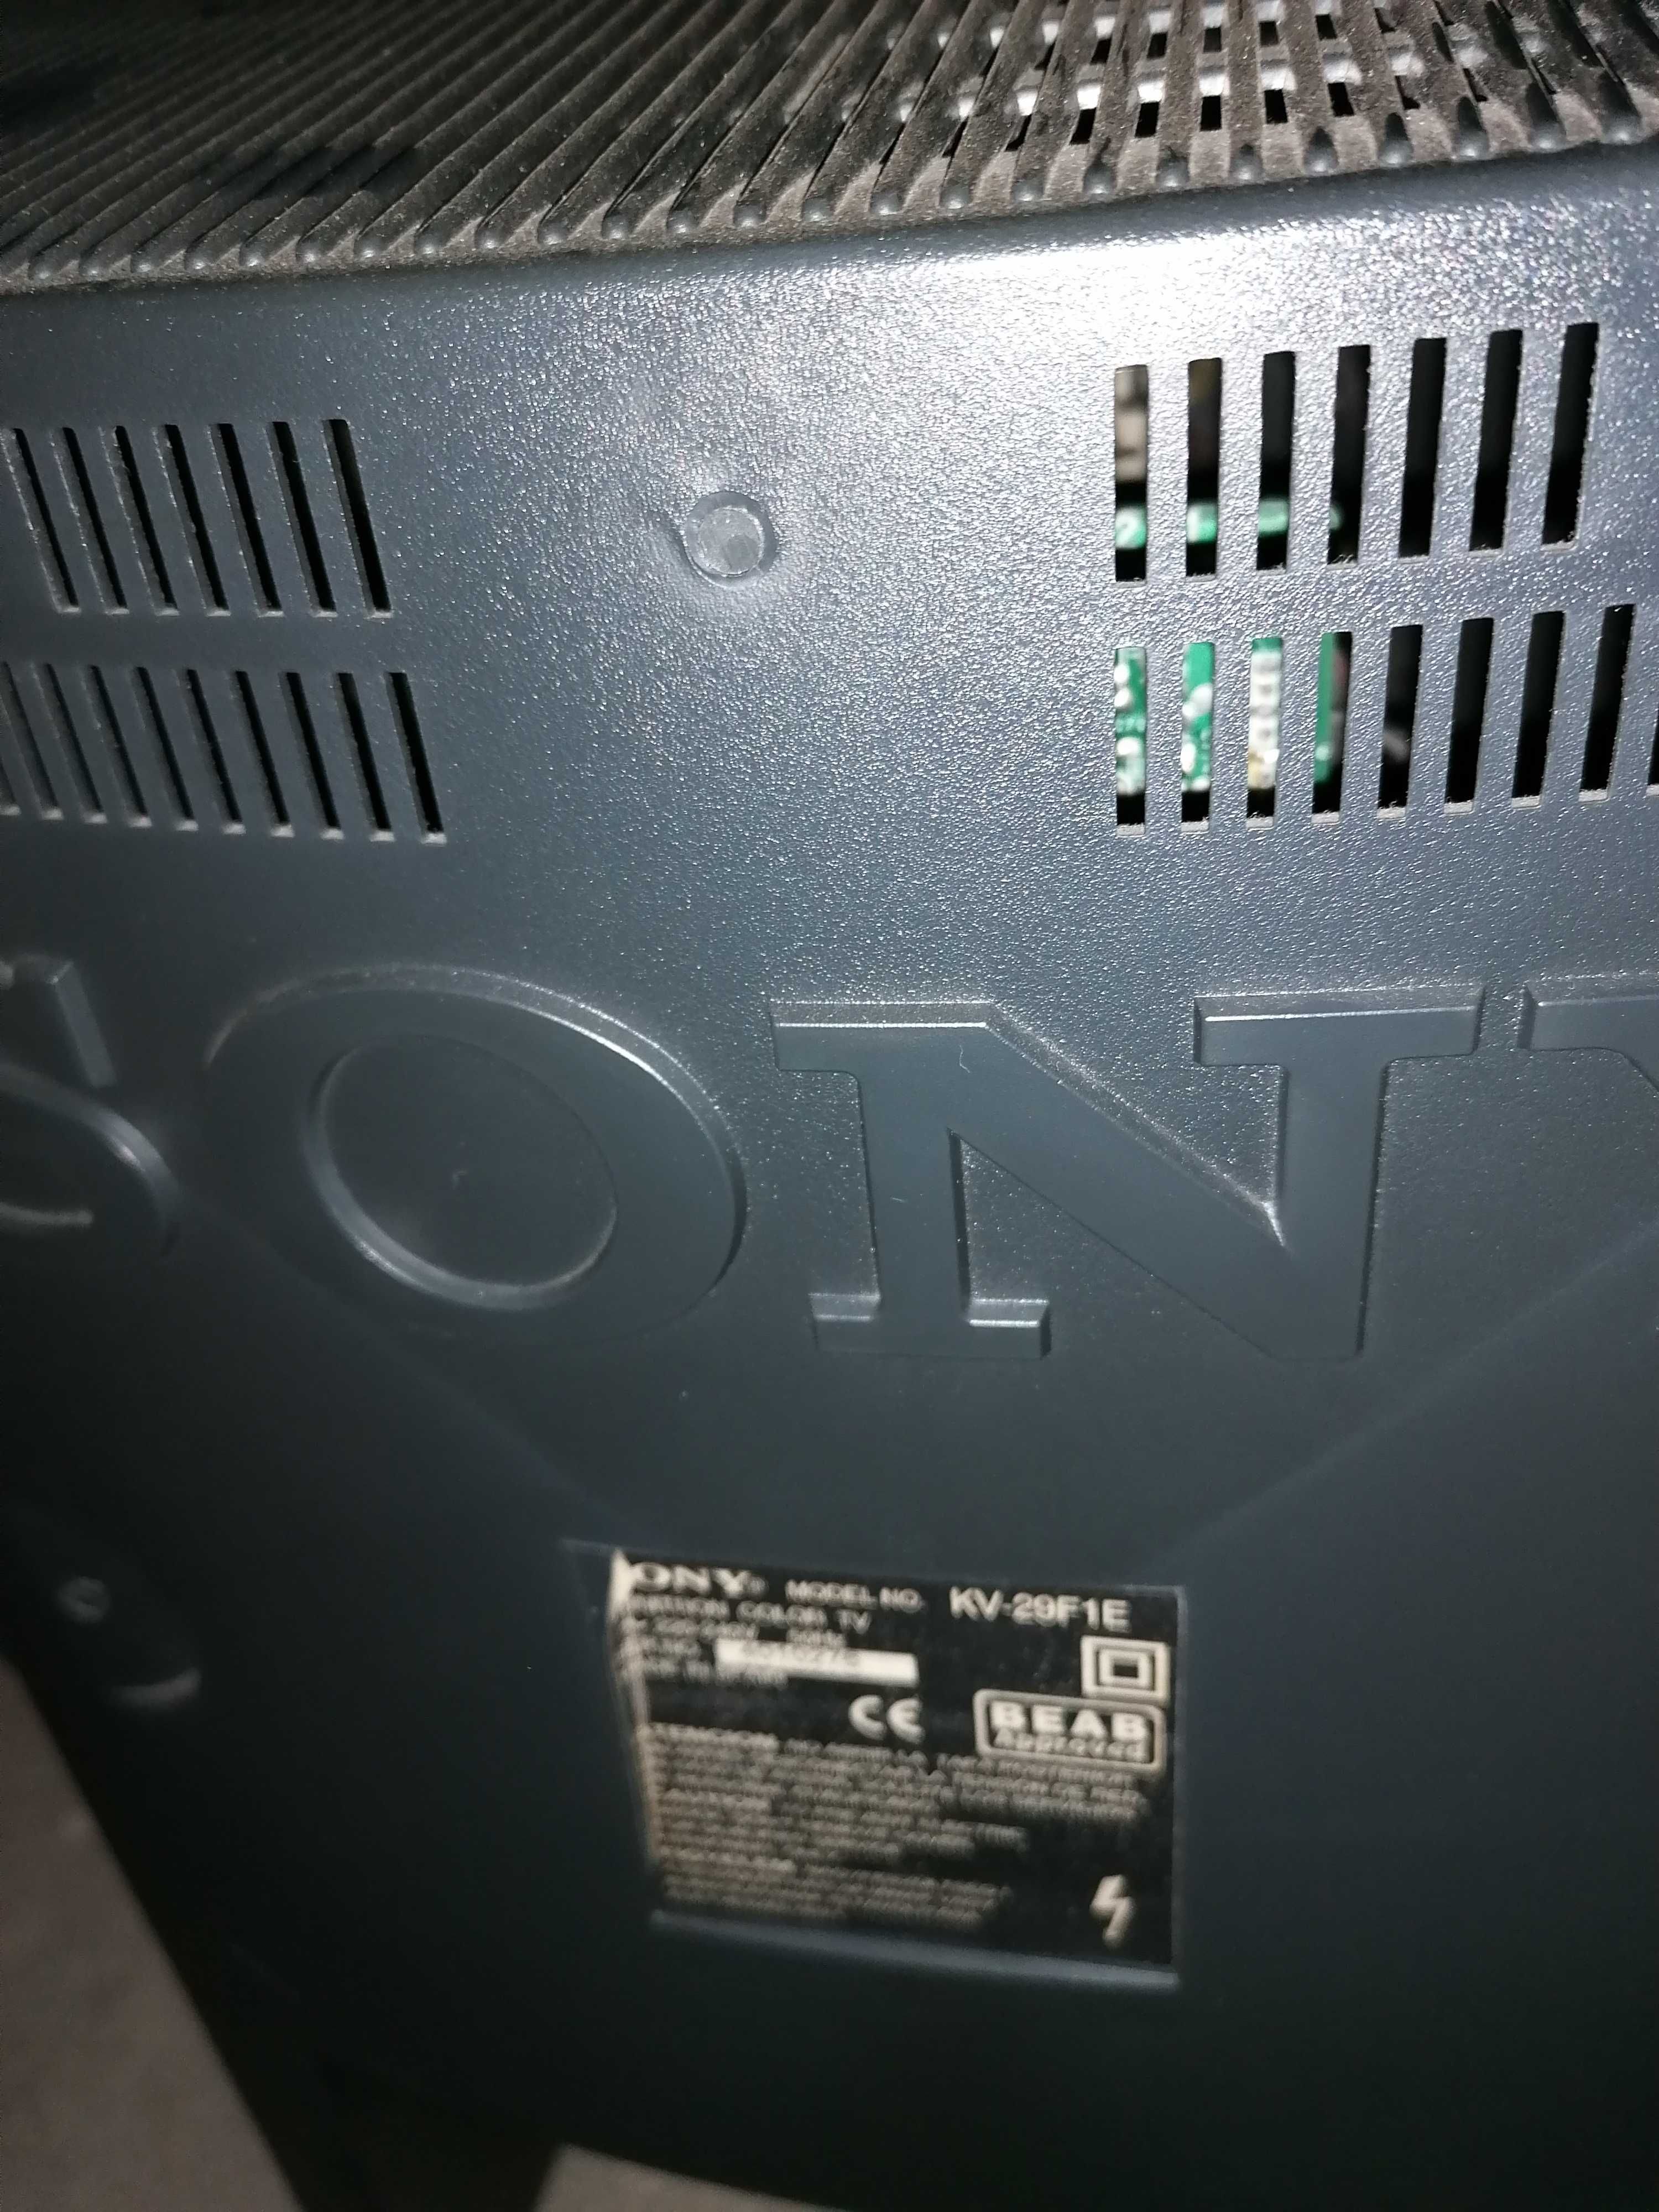 TV Sony retro excelente estado.